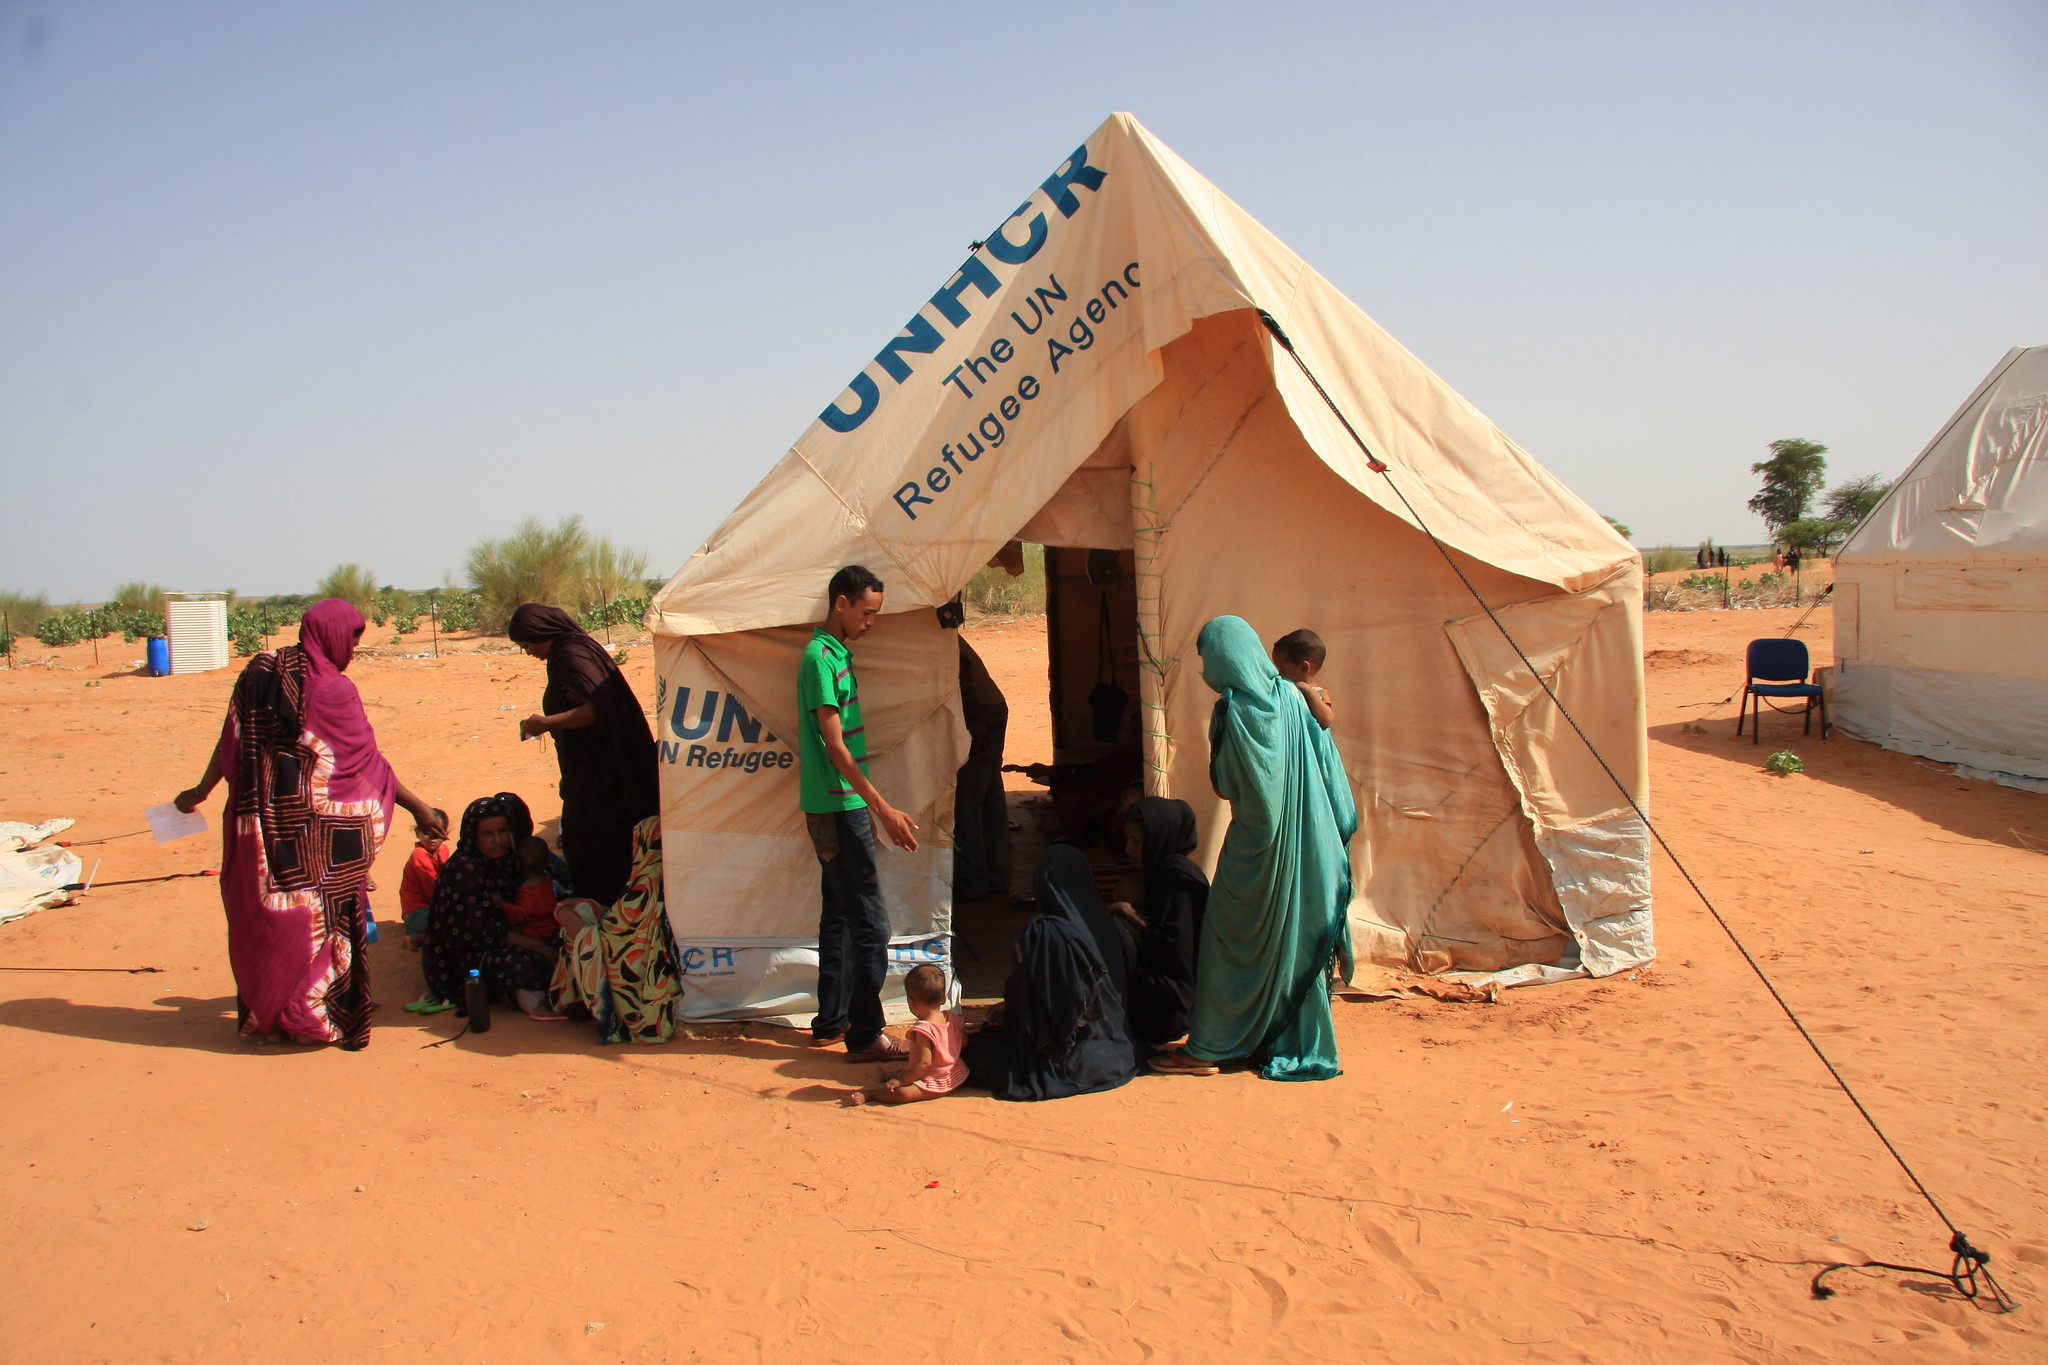 Le magazine du 14/08/2019 – Région de Maradi : sensibilisation sur les conventions ratifiées par le Niger en matière de protection internationale des refugiés